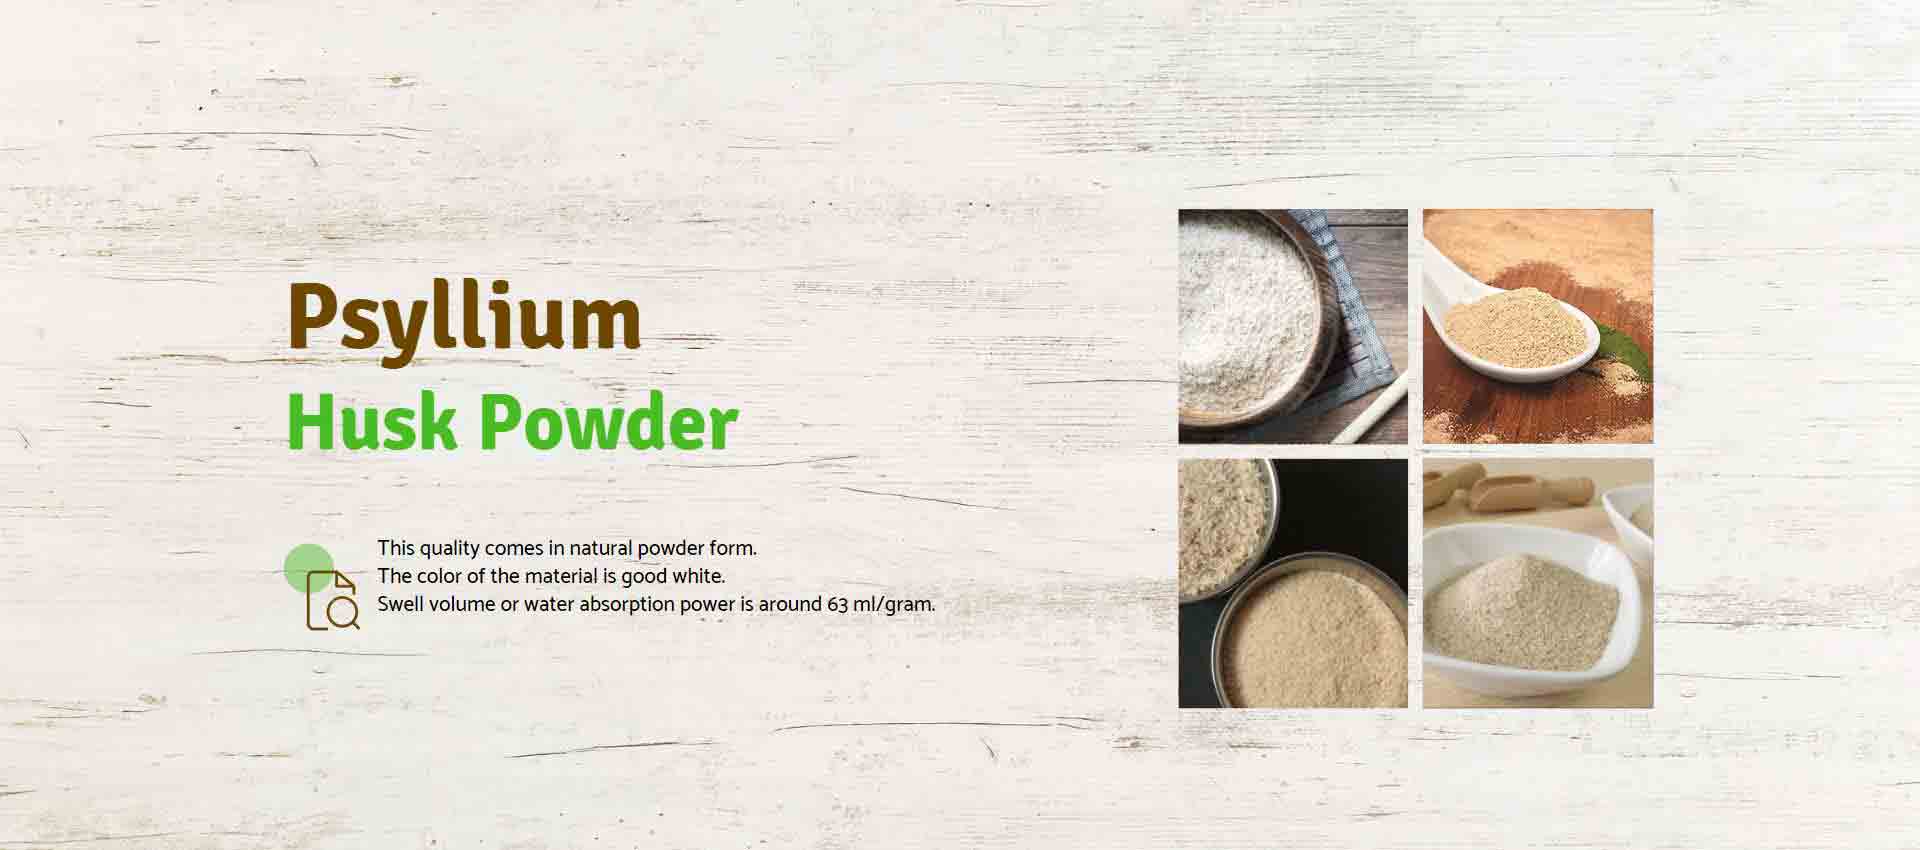 Psyllium Husk Powder Manufacturers in Surat